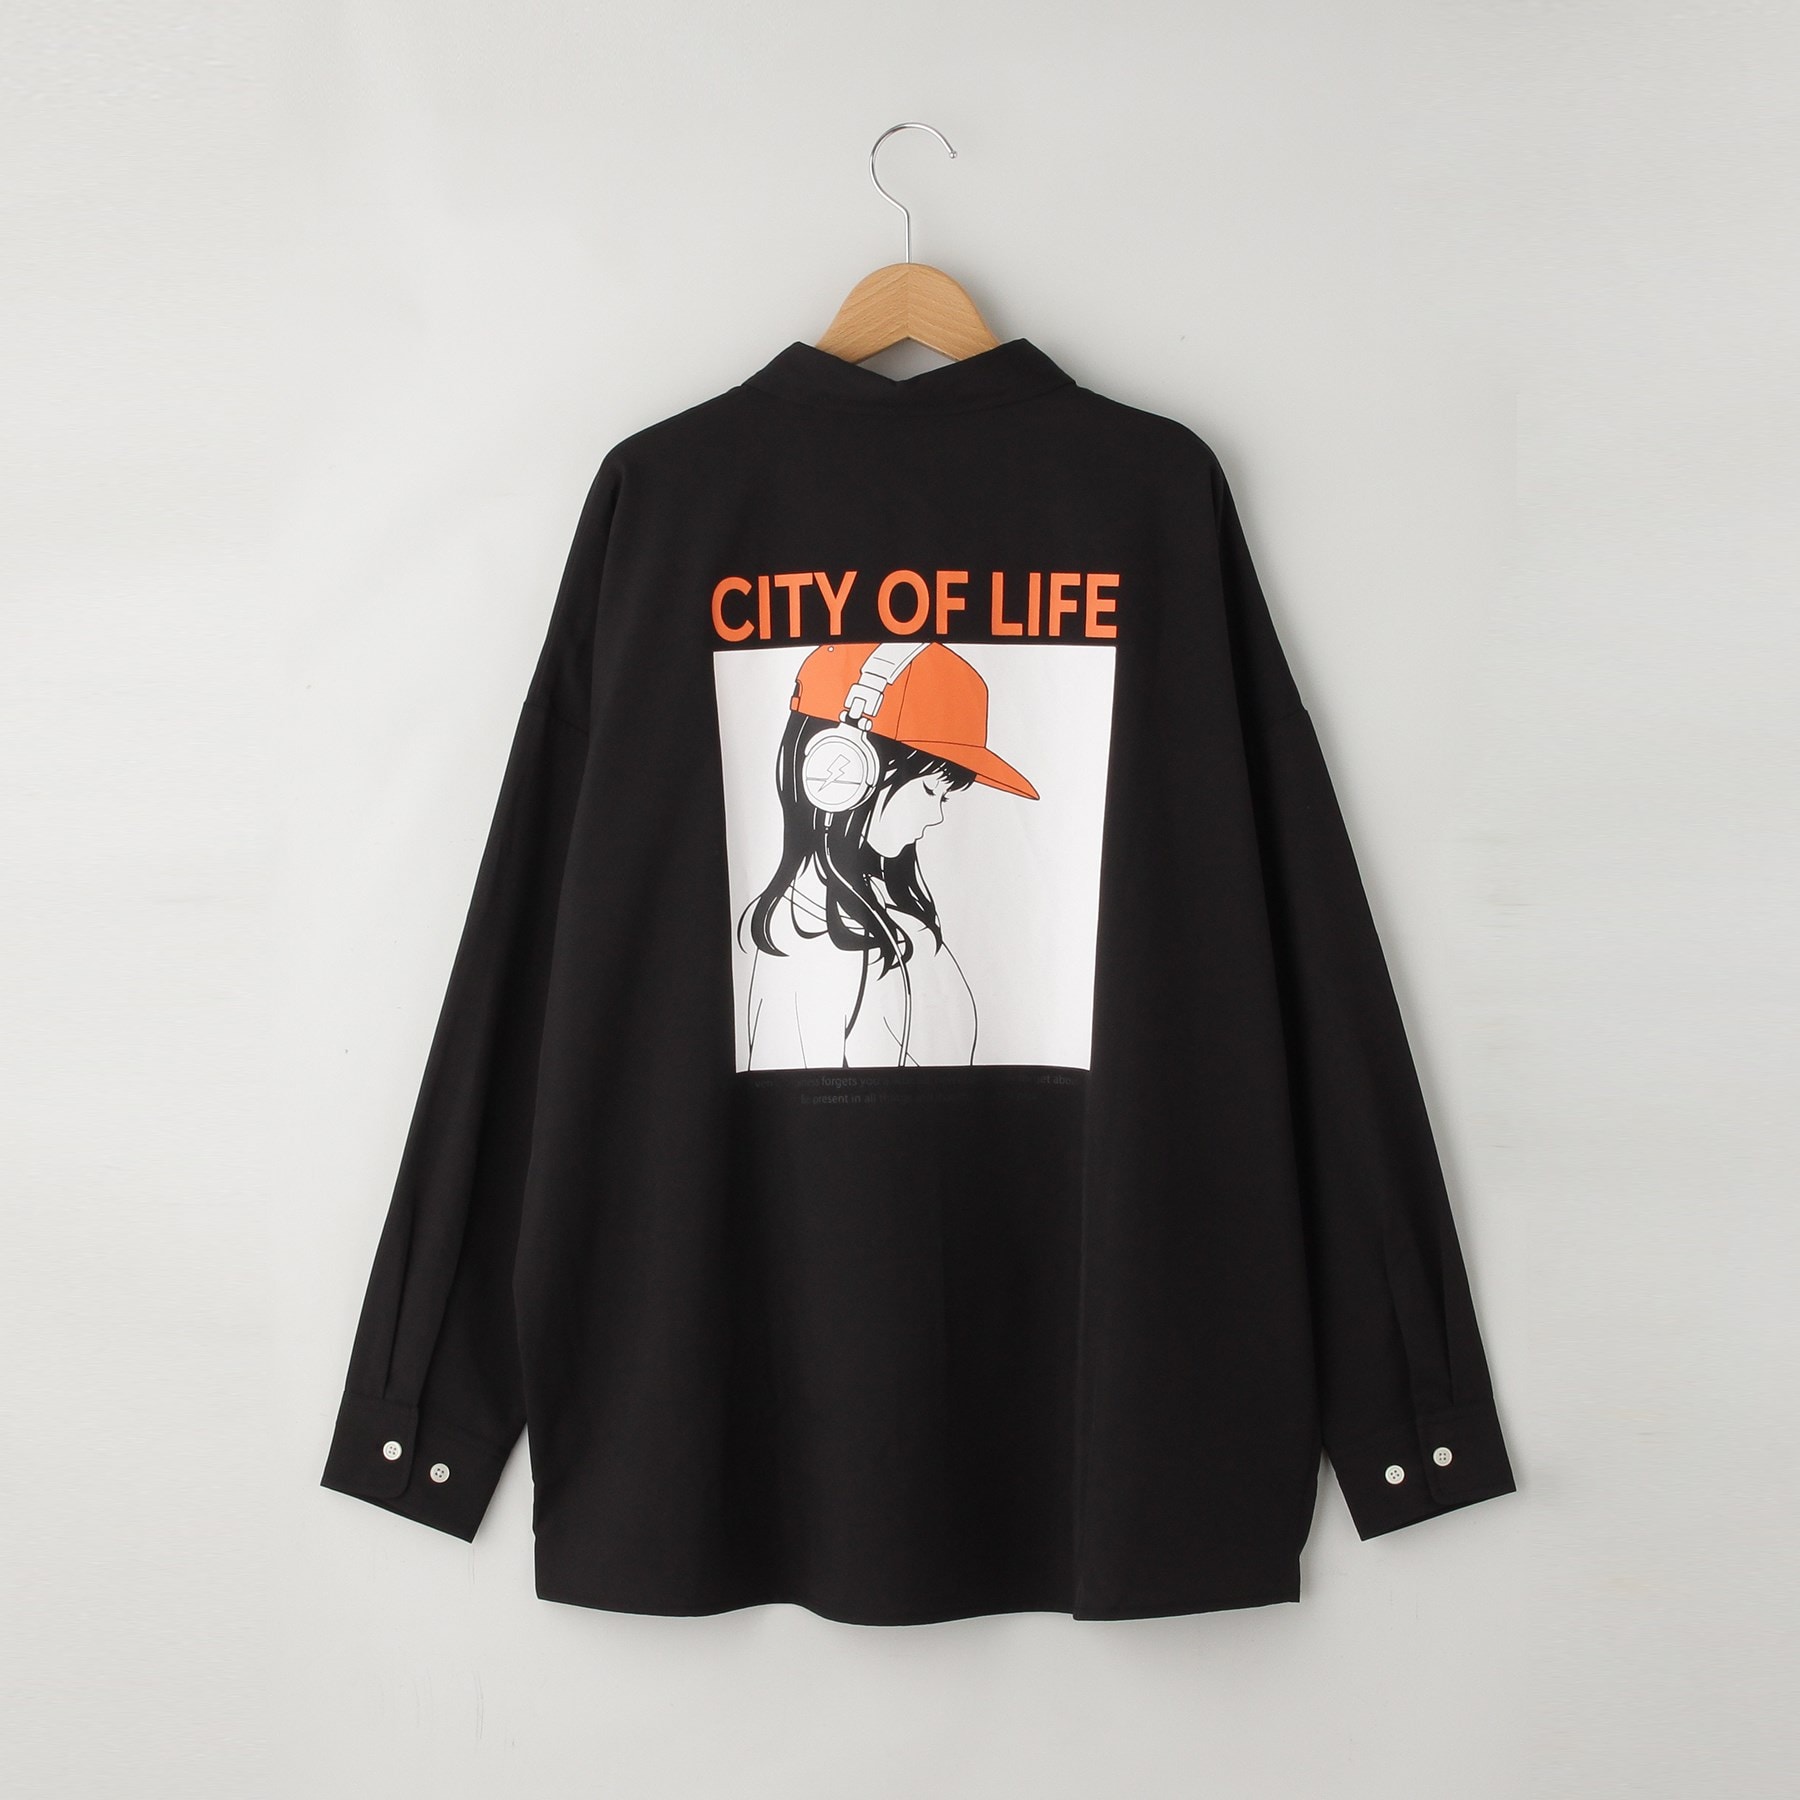 オフプライスストア(メンズ)(OFF PRICE STORE(Mens))のHALHAM バックプリントビックシャツ(CITY OF LIFE)5